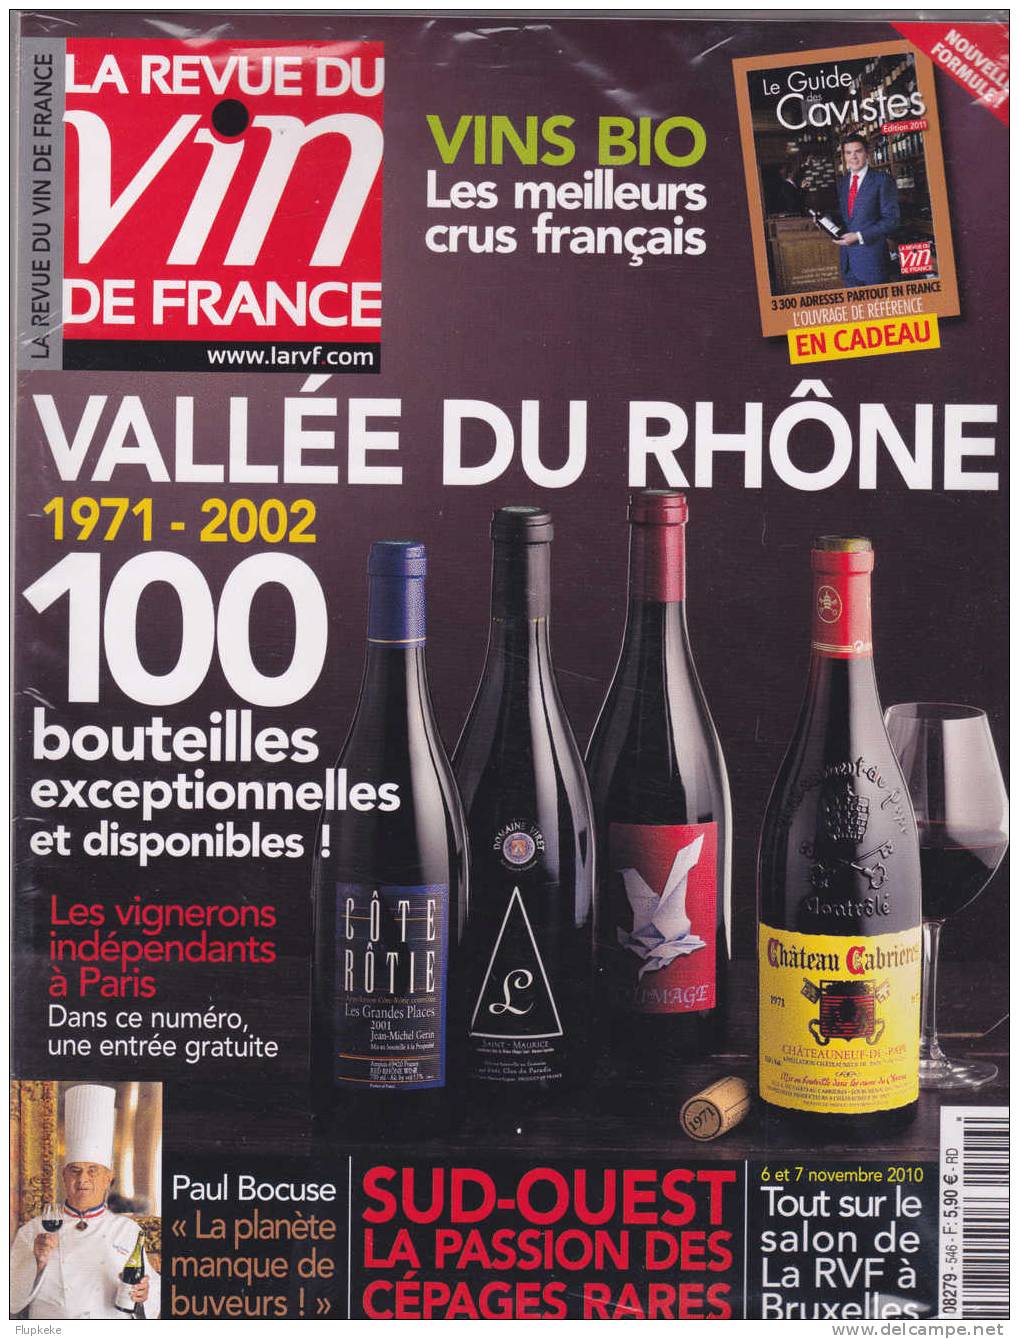 La Revue Du Vin De France 546 Novembre 2010 Vallée Du Rhône 1971-2002 + Guide Des Cavistes Édition 2011 - Küche & Wein